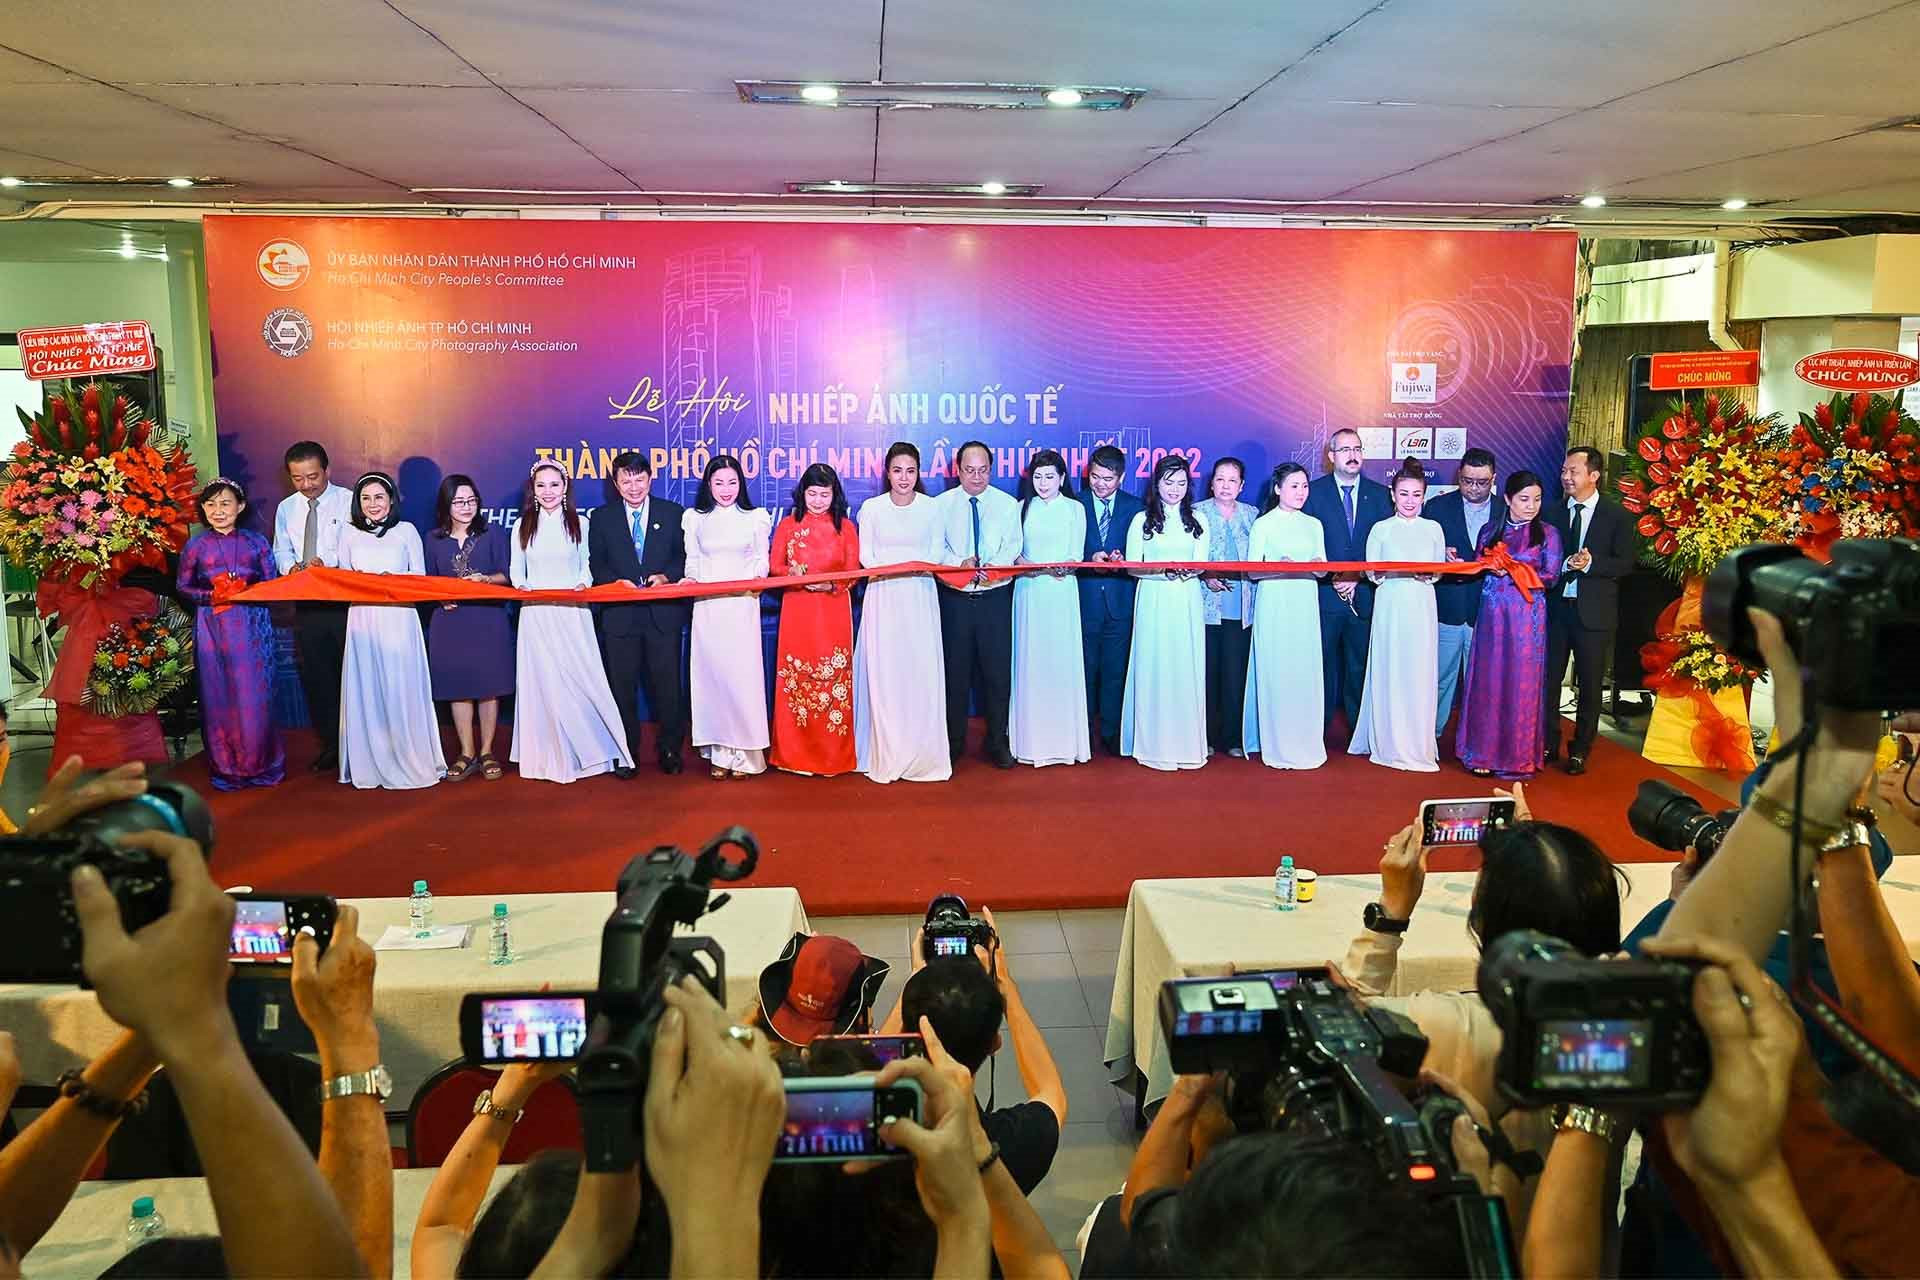 Các đại biểu thực hiện nghi thức các băng khai mạc Lễ hội Nhiếp ảnh quốc tế TP Hồ Chí Minh lần thứ Nhất – năm 2022.